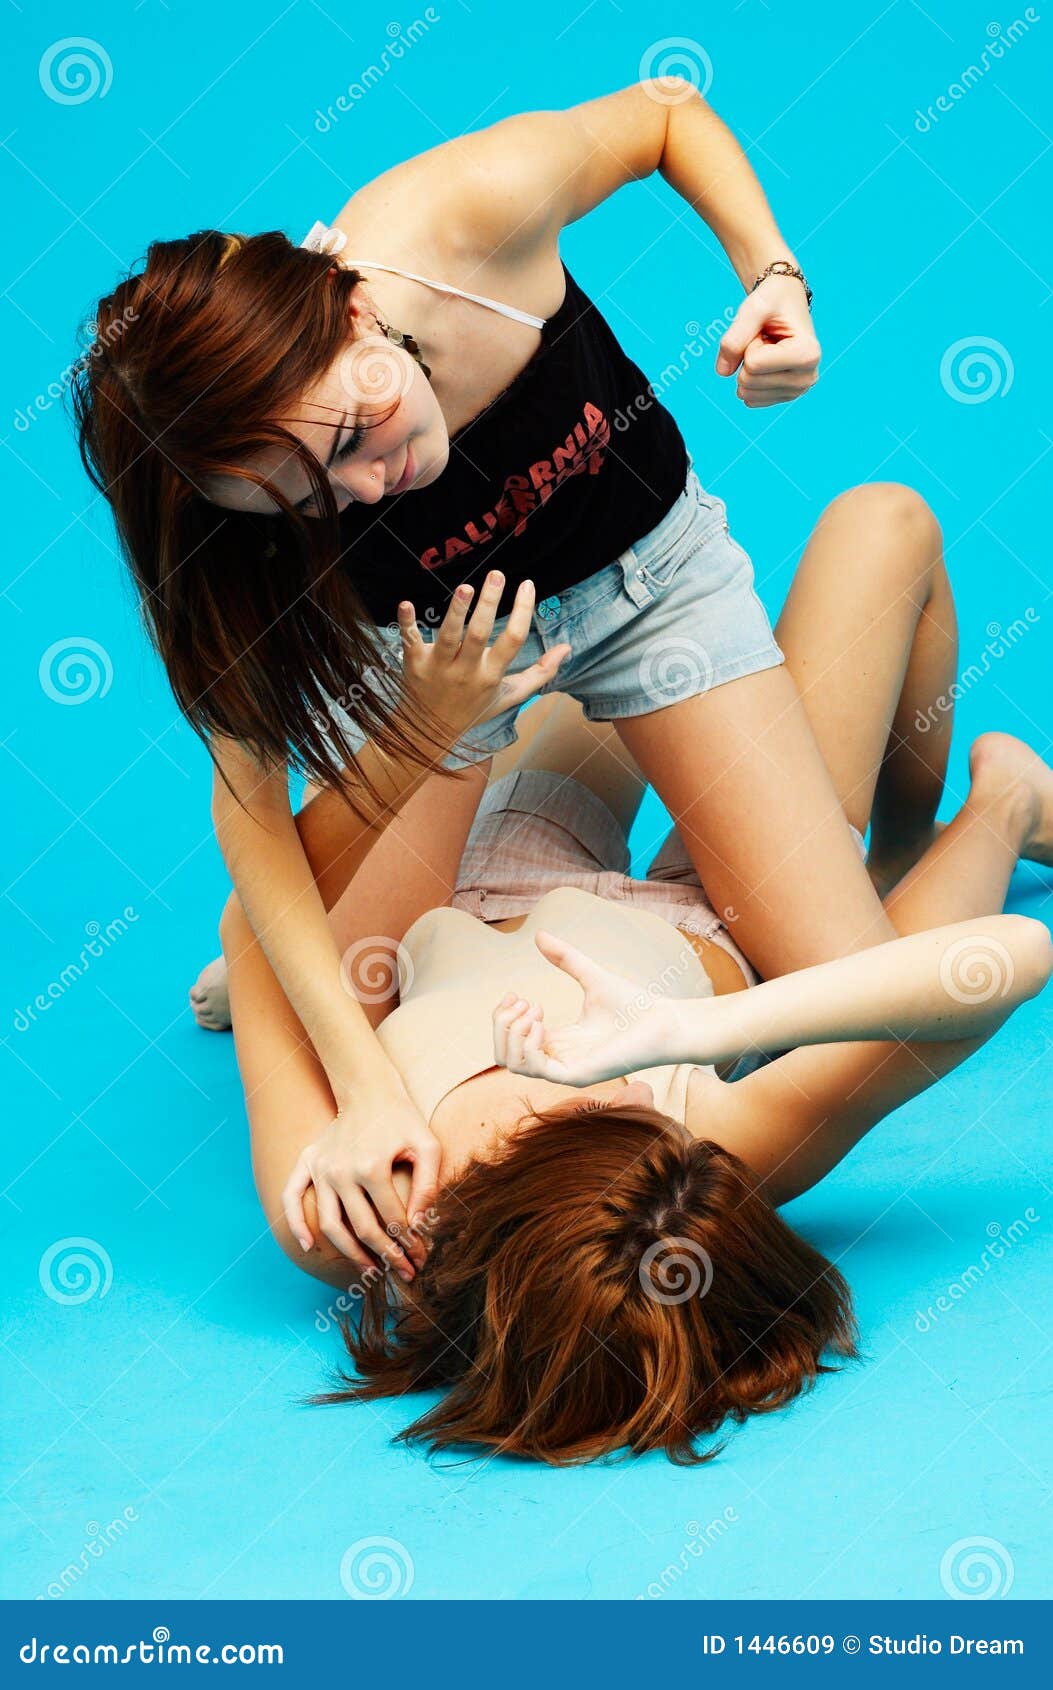 Girls Wrestling On Bed groped men